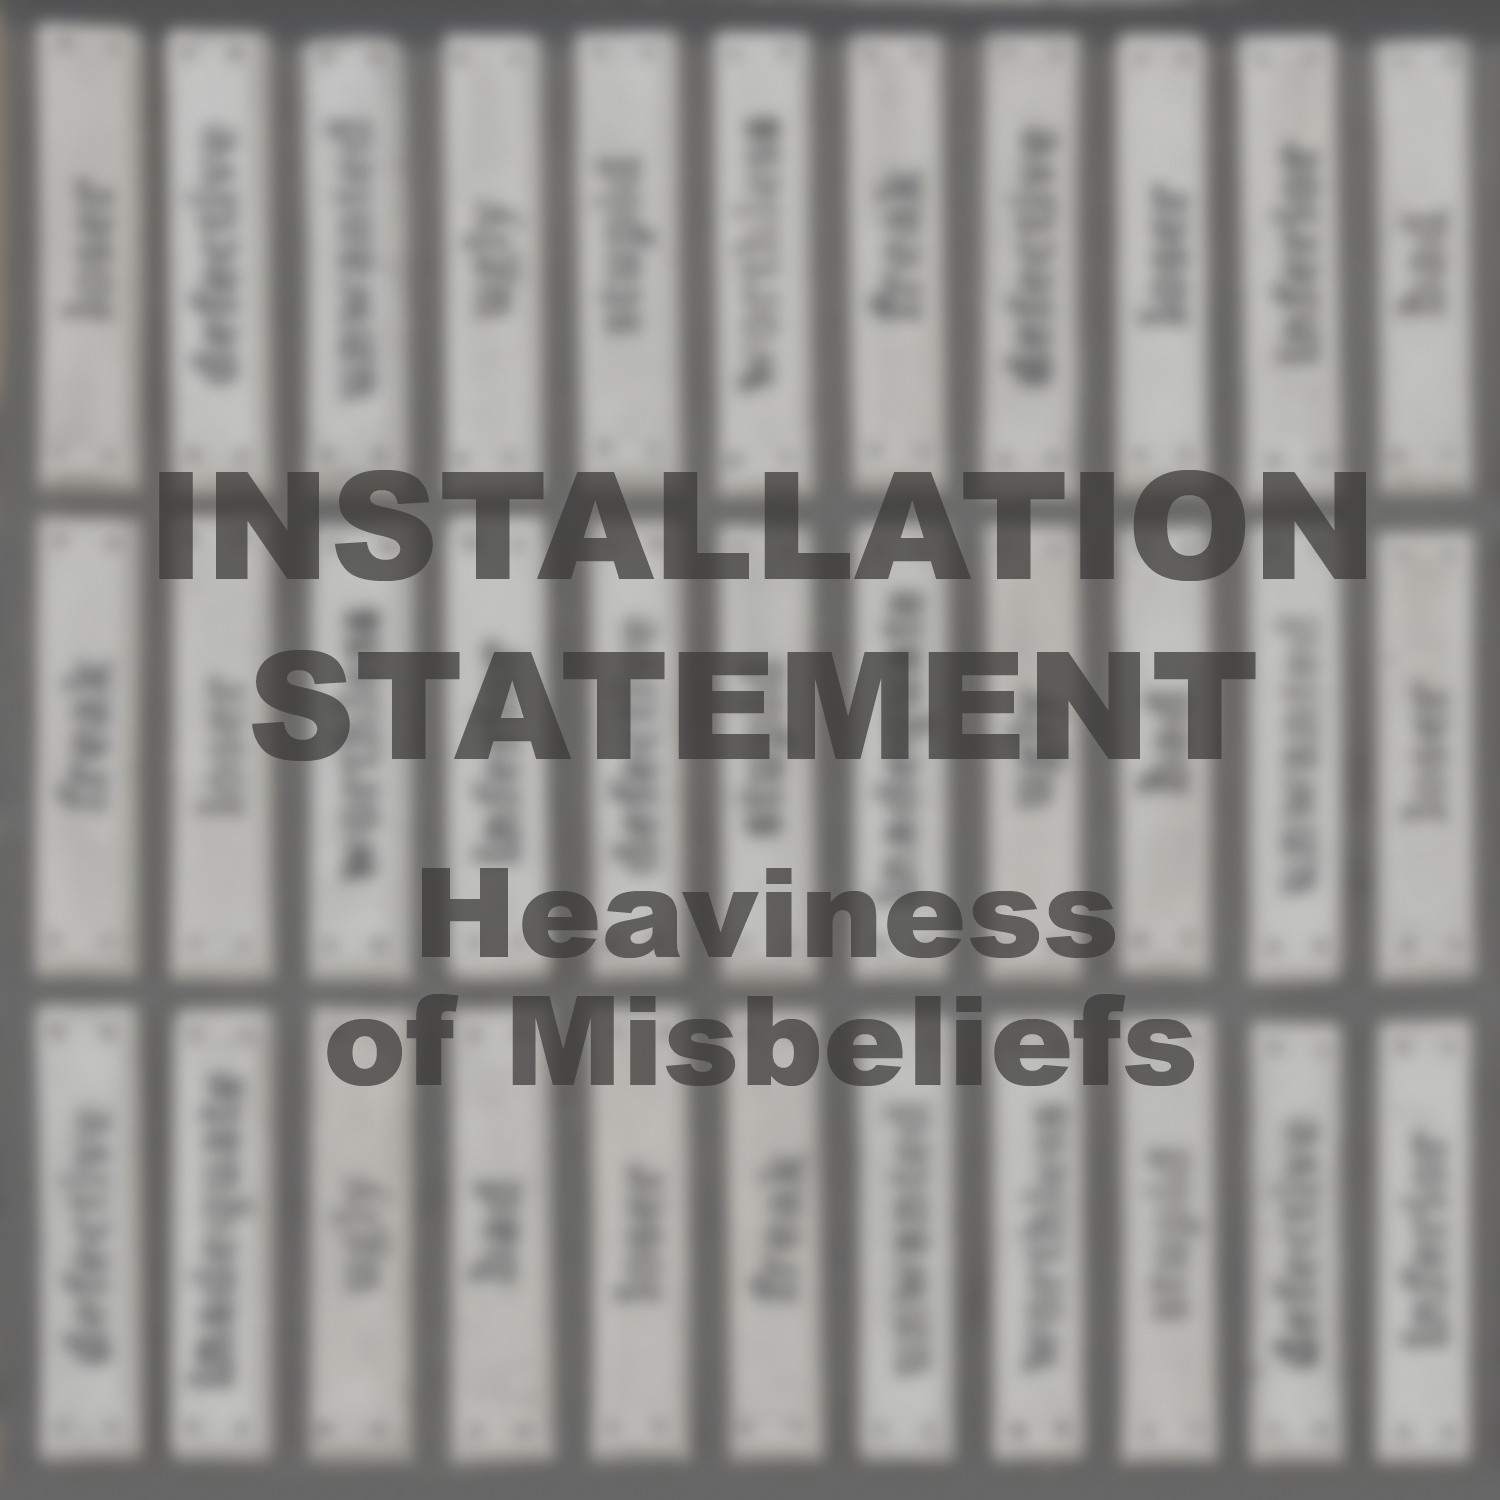 [installation statement]